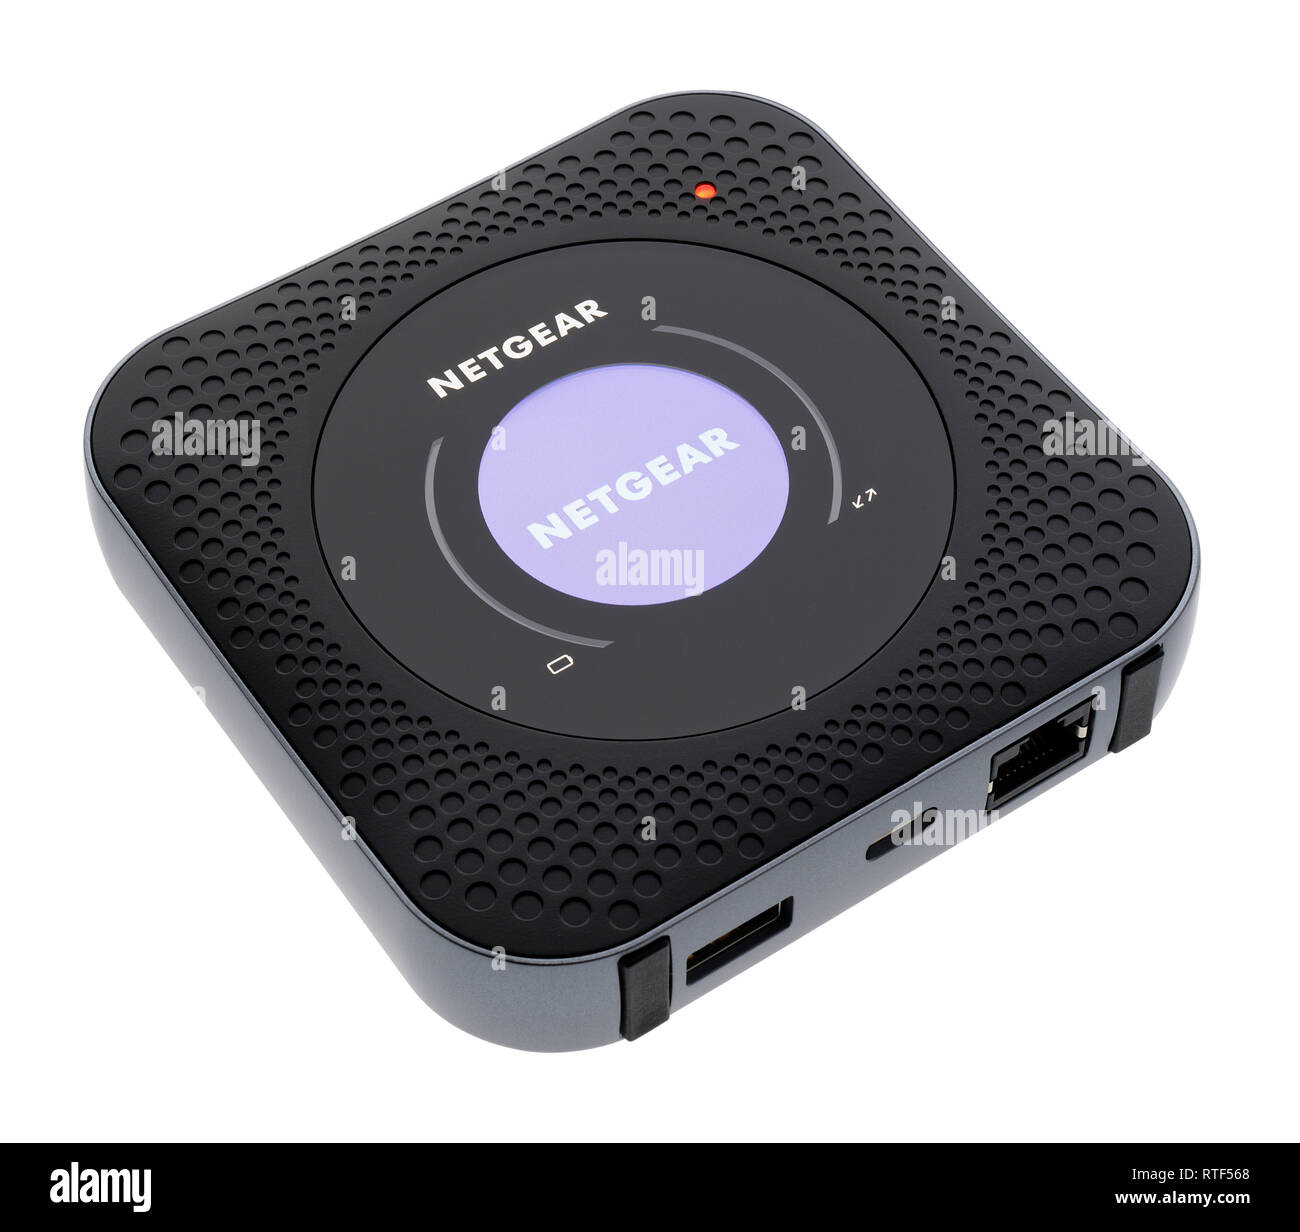 Routeur Netgear Nighthawk Mobile Hotspot. Hotspot mobile LTE. Banque D'Images